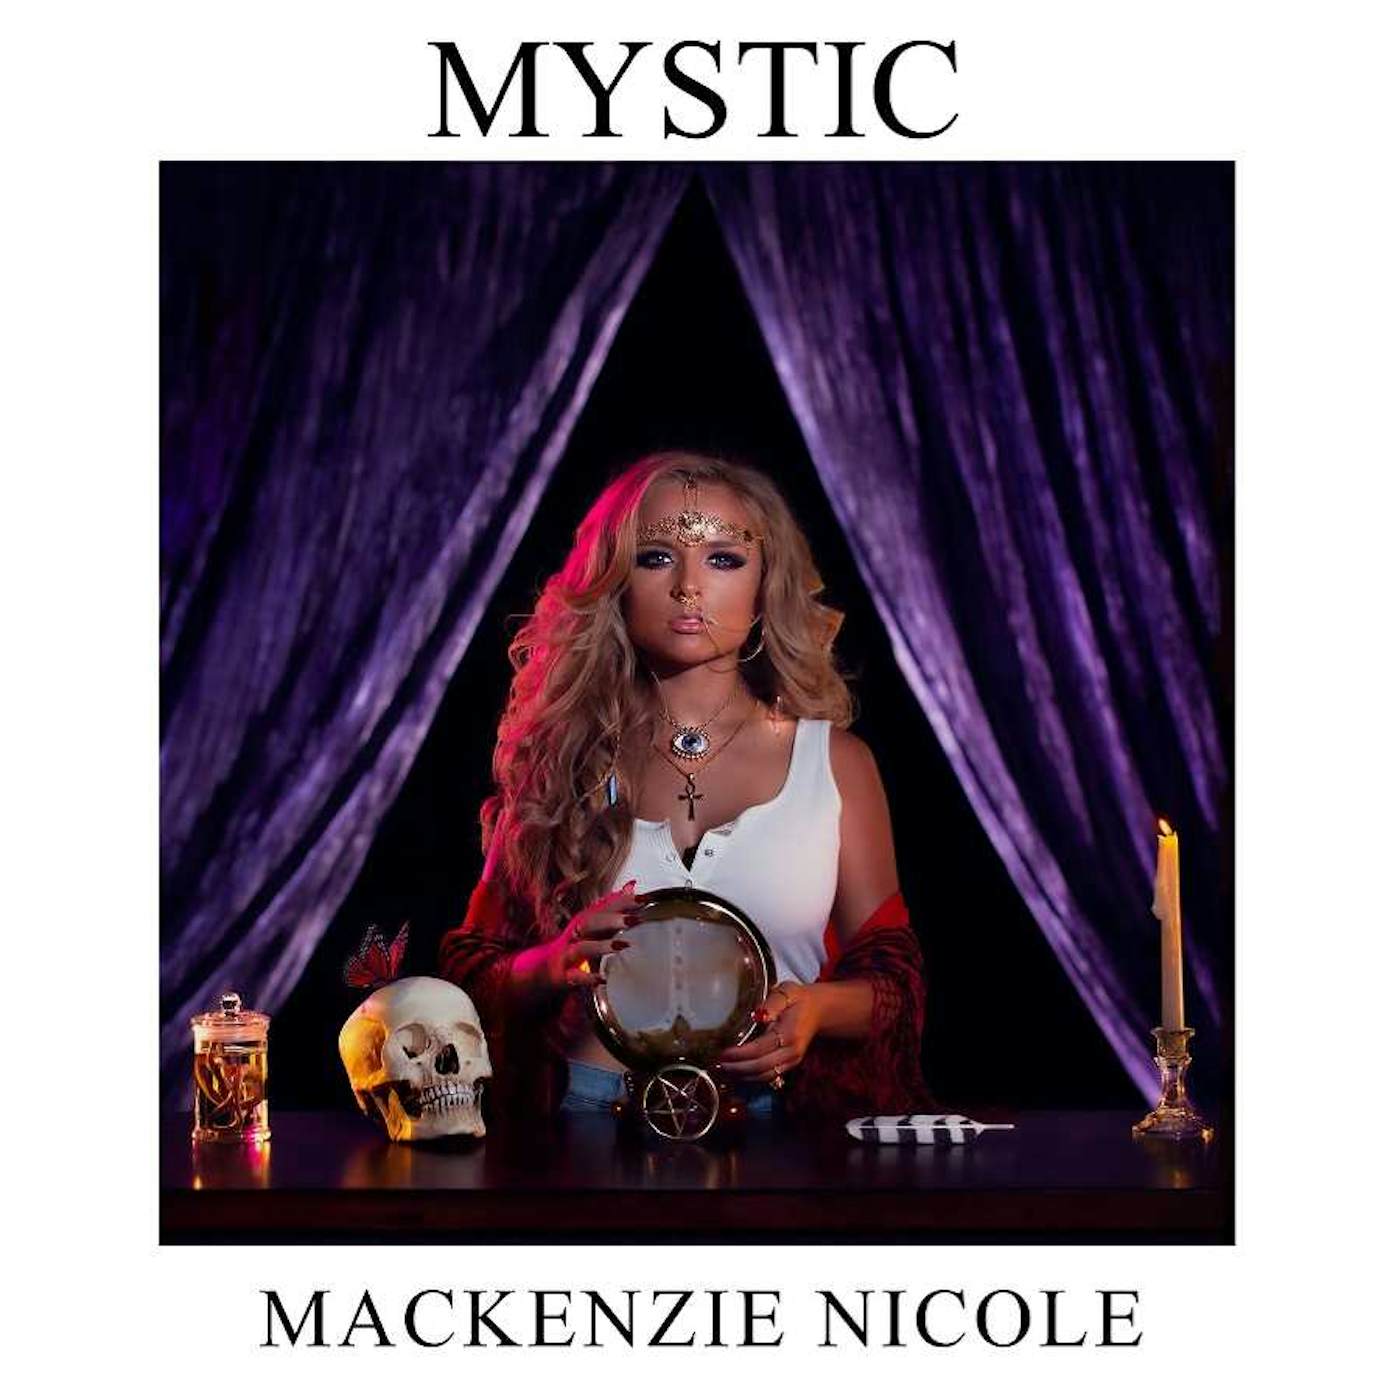 Mackenzie Nicole MYSTIC CD